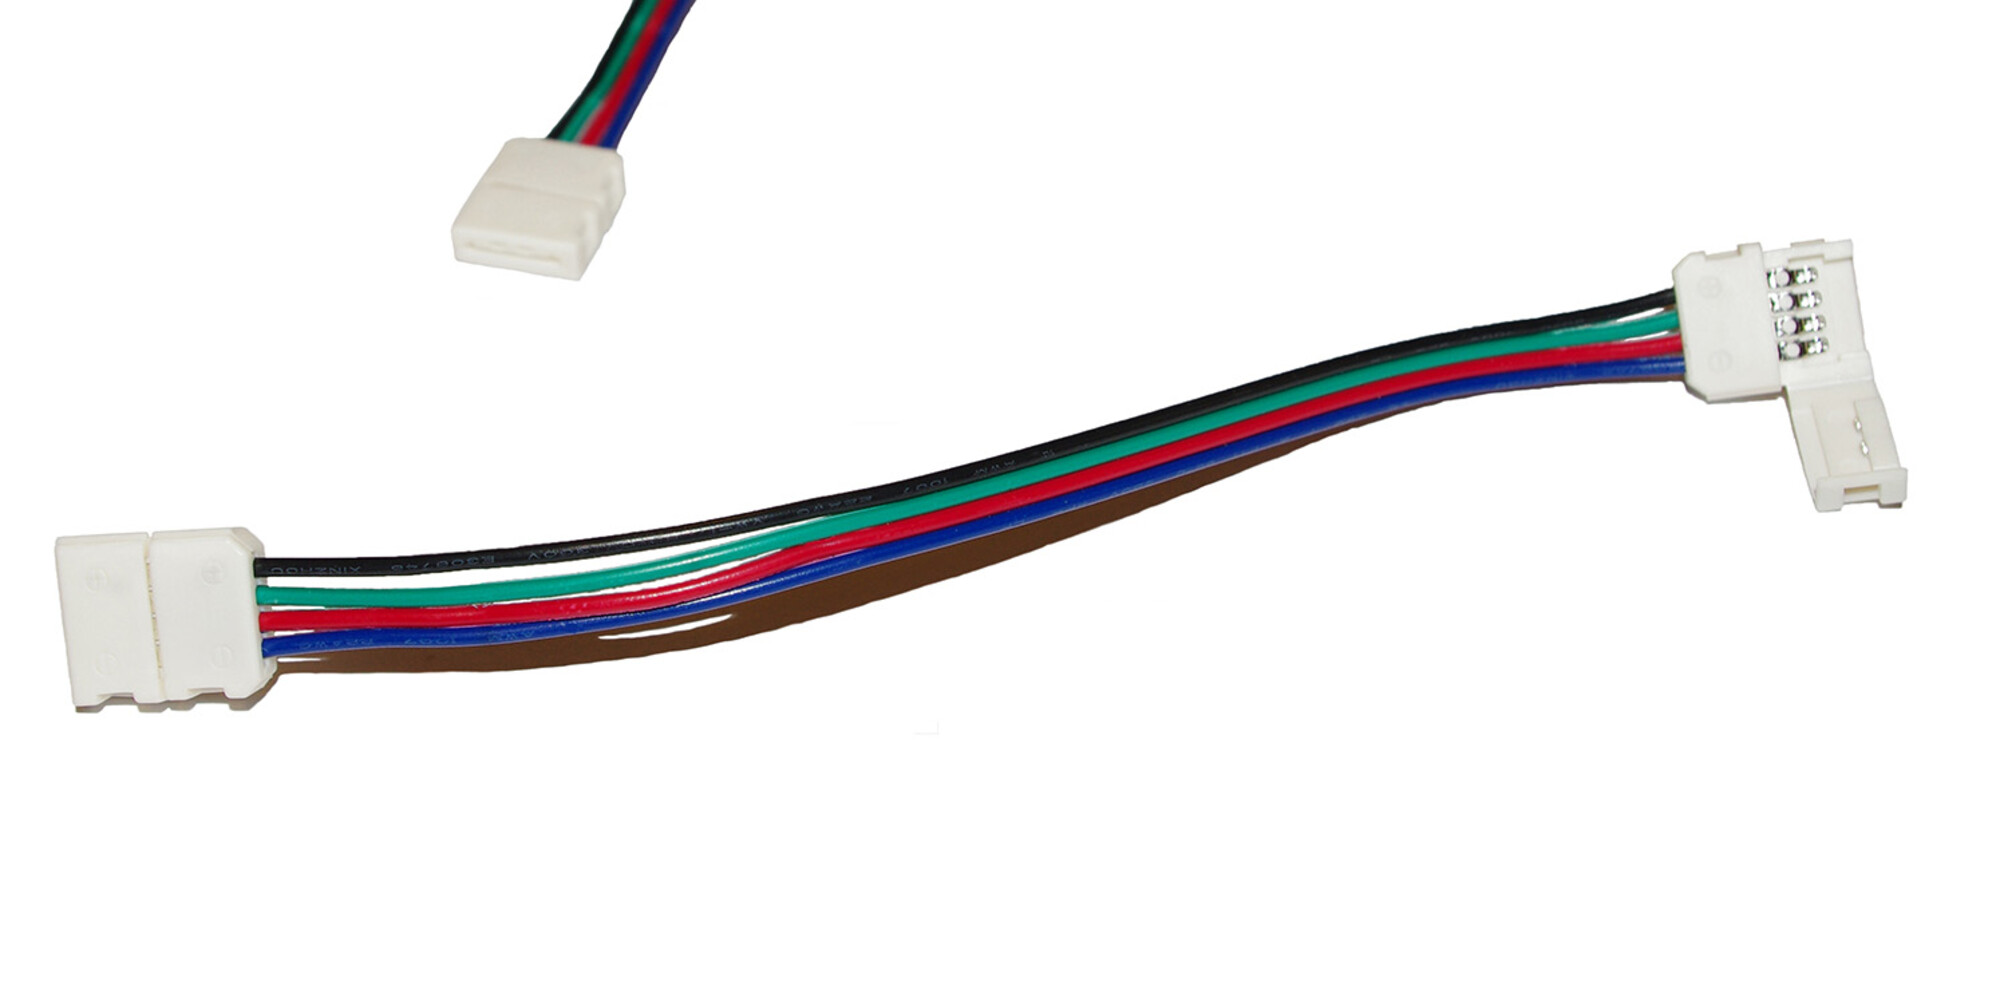 Hochwertiges LED Streifen Kabel von LED Universum mit Klippbefestigung und Schnellverbinder